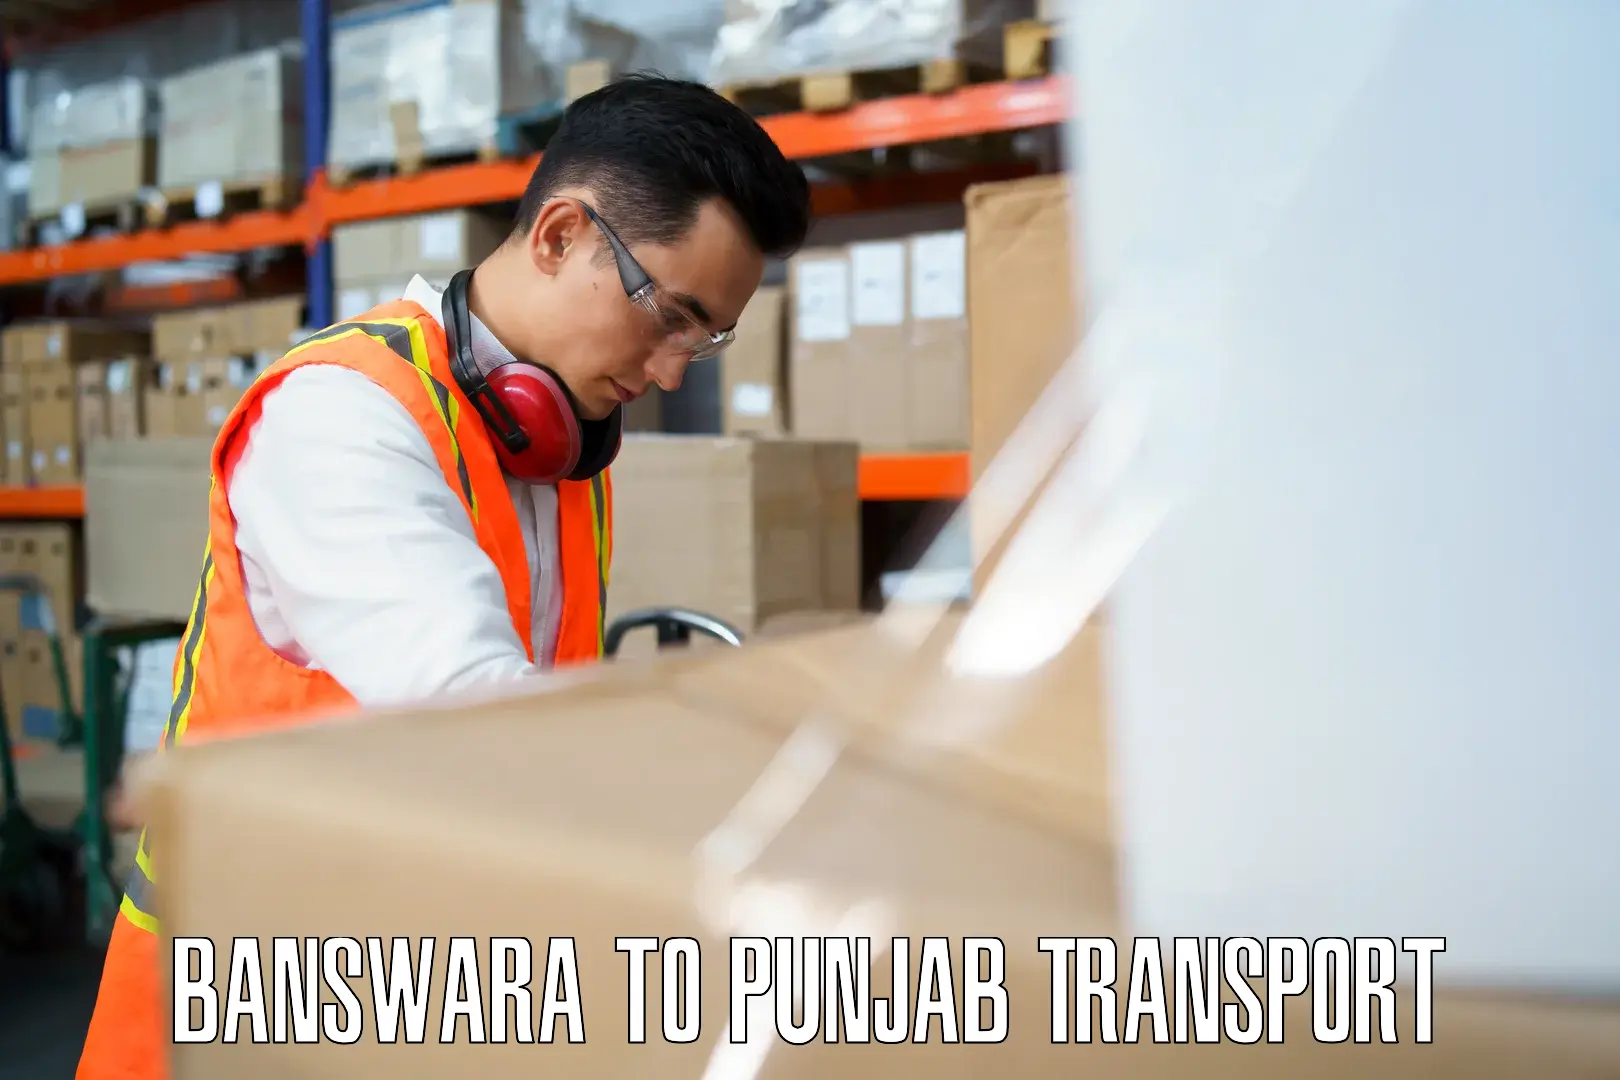 Cargo transport services in Banswara to Punjab